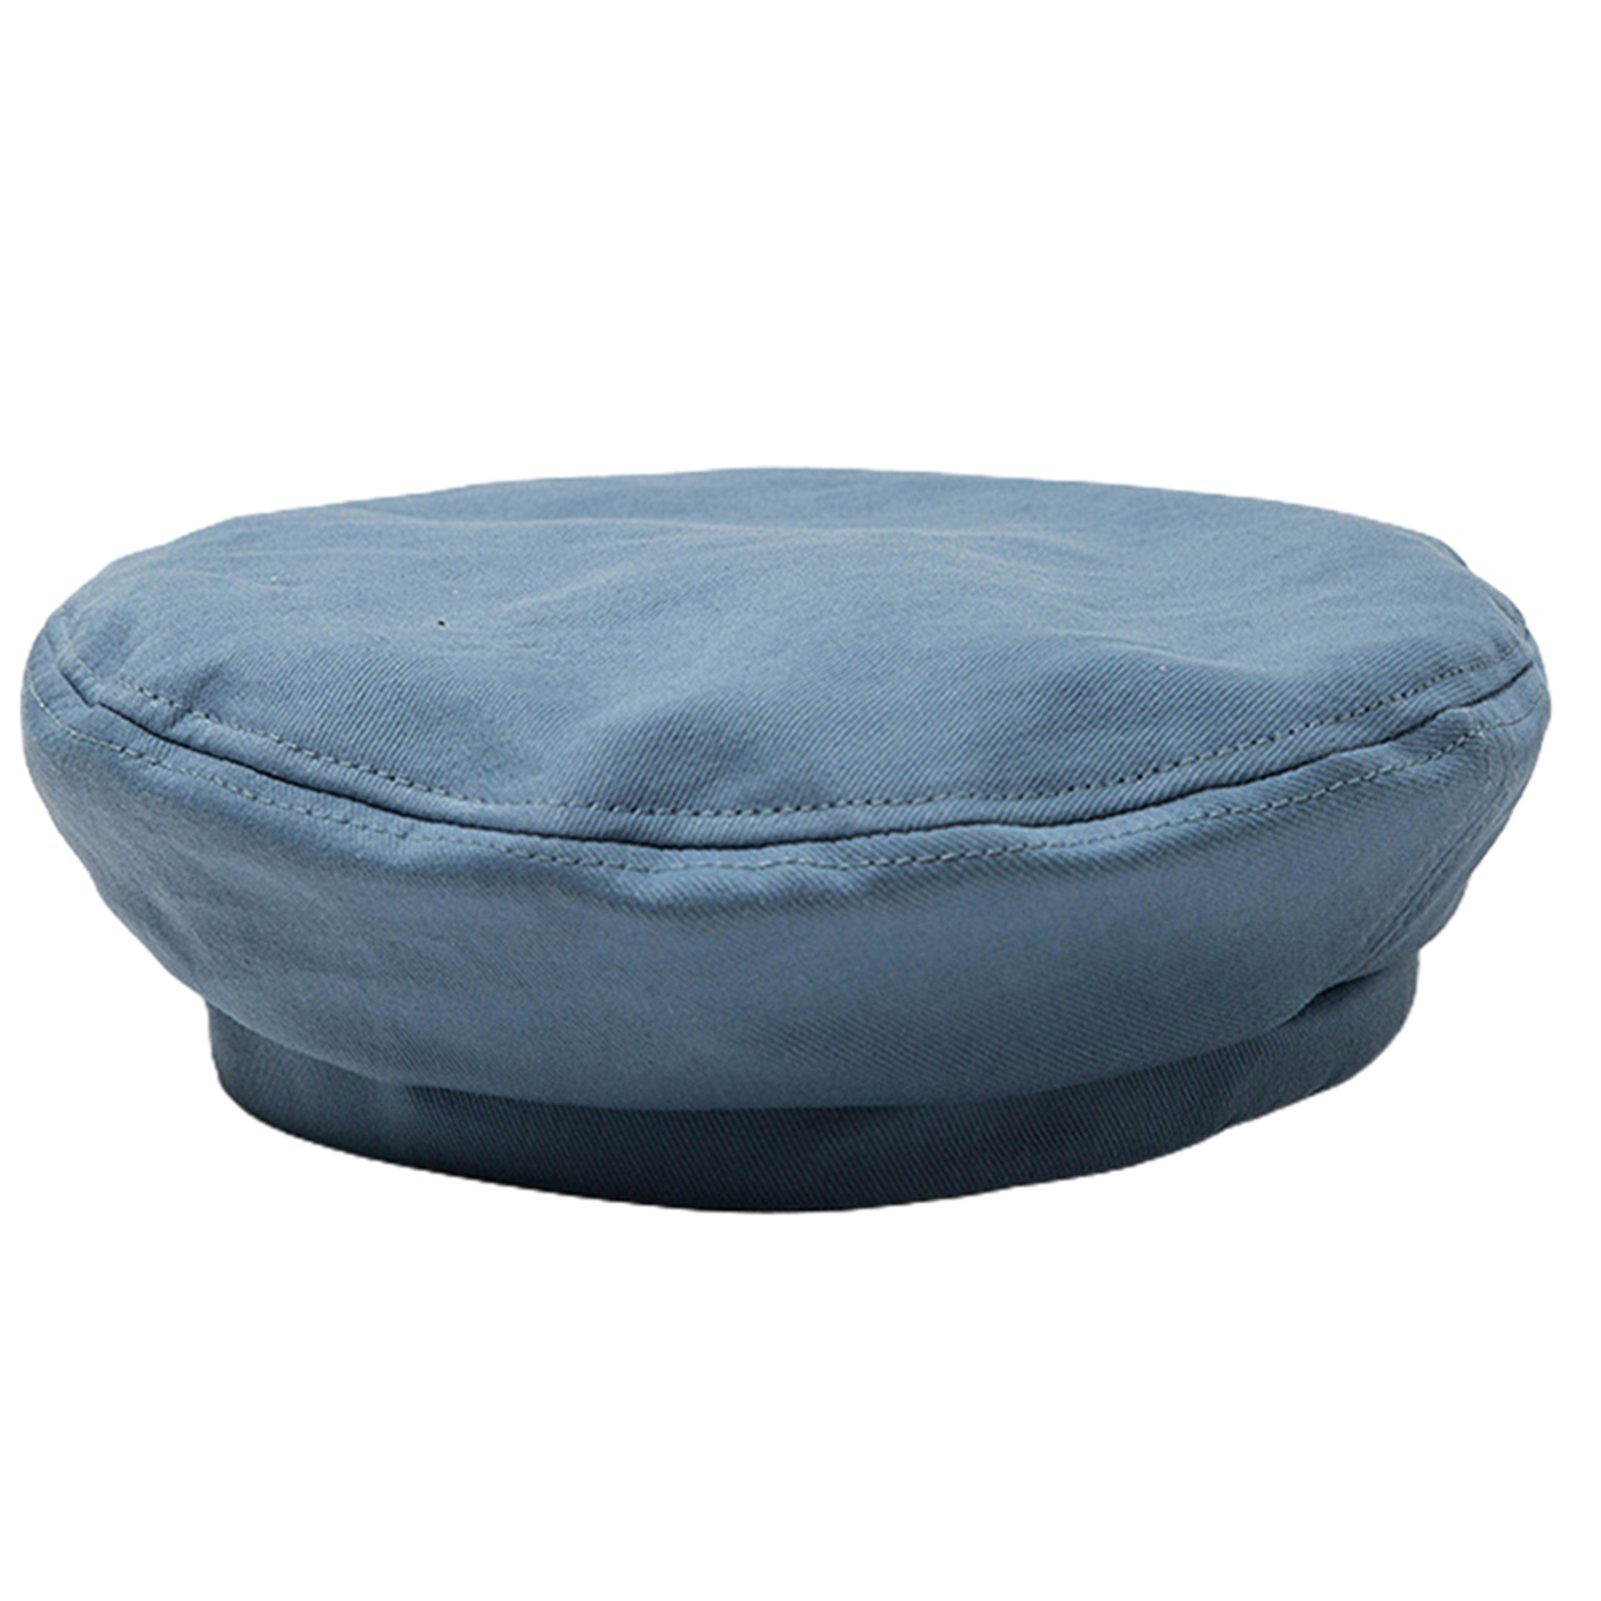 Blusmart Achteckige Baskenmütze Blau Modische Verstellbar, Freizeit-Baskenmütze,